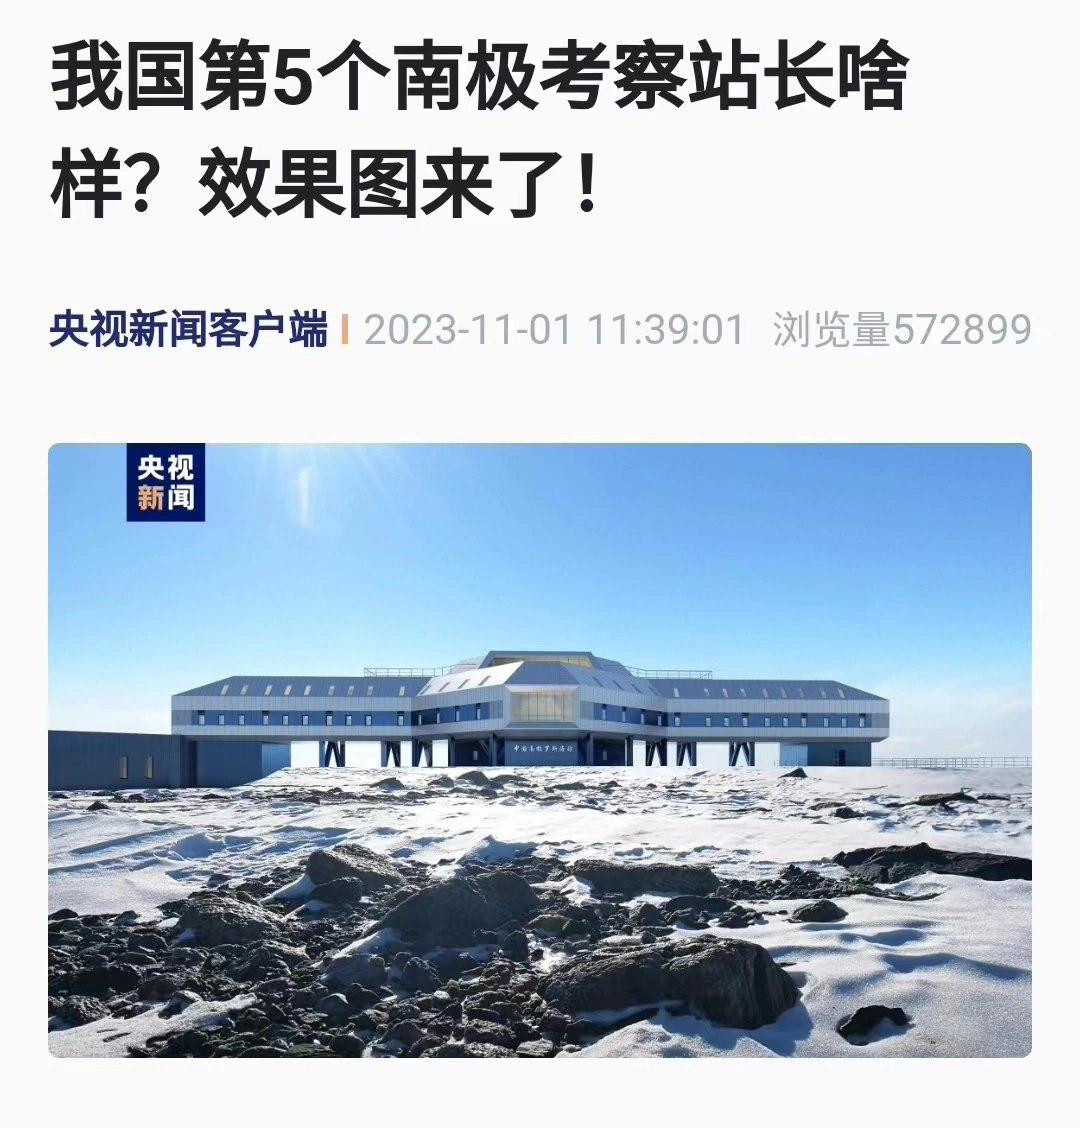 “雪龙2”号穿越赤道 中国第40次南极考察船队已进入南半球